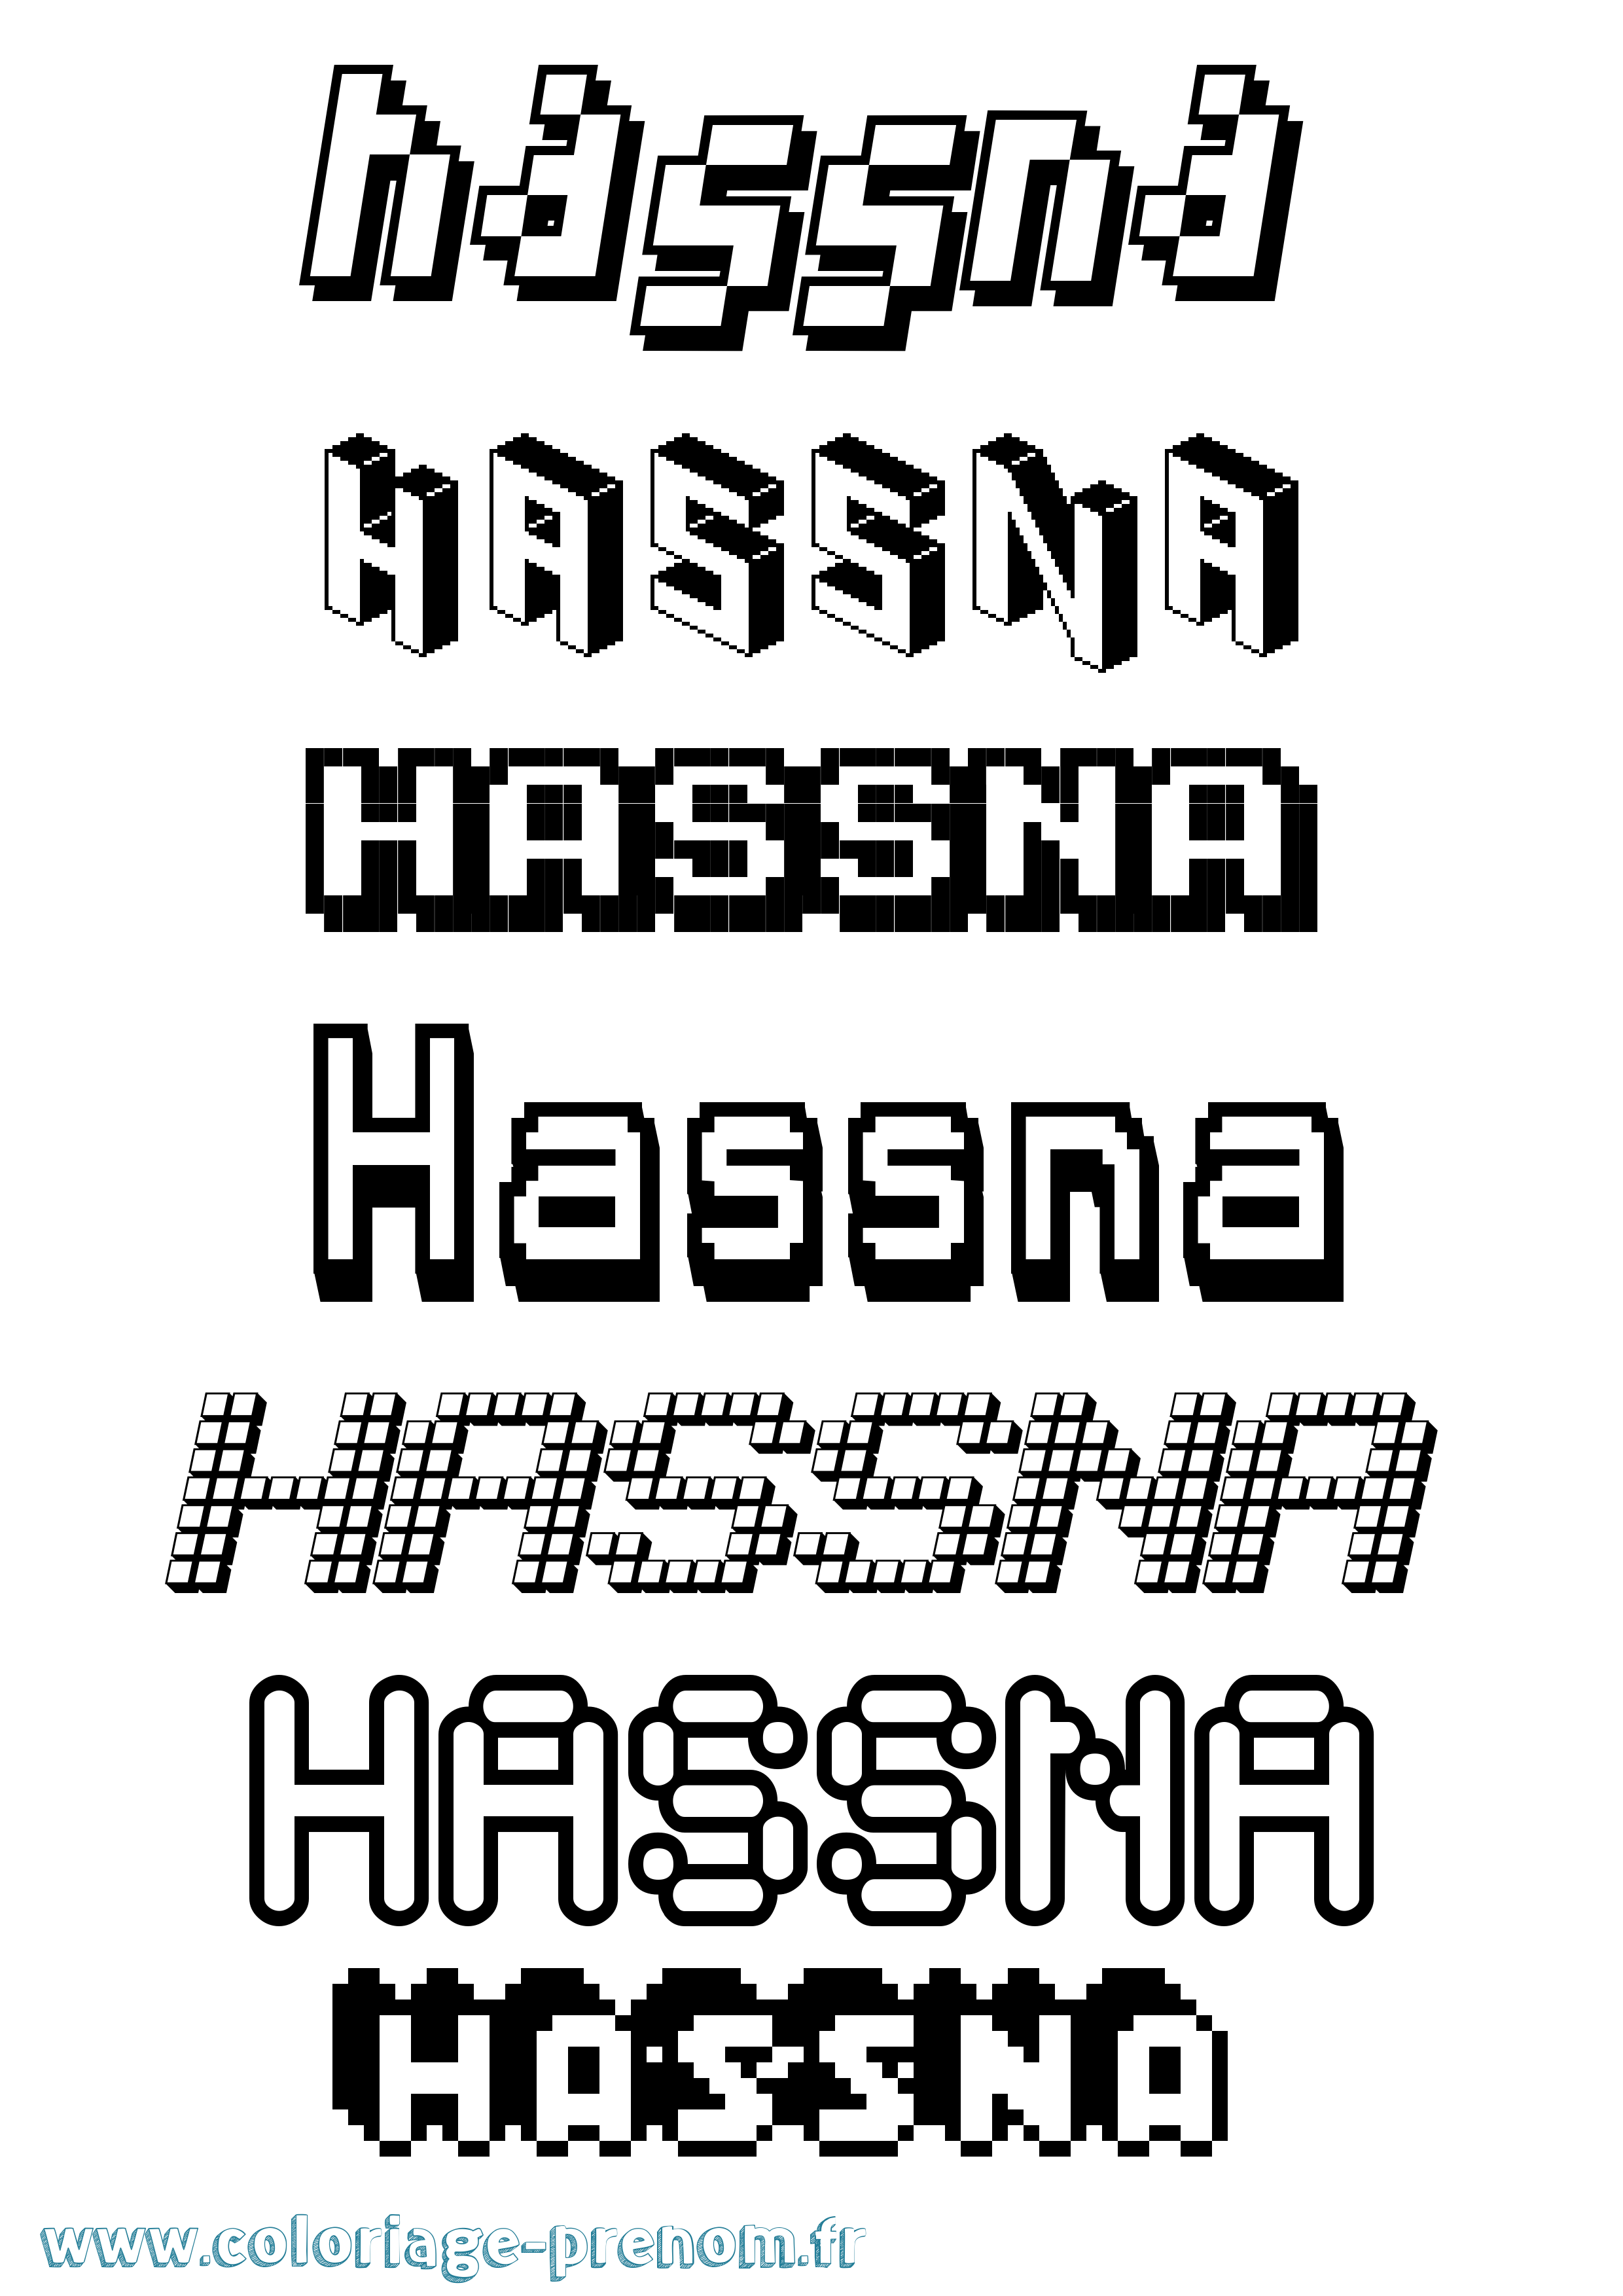 Coloriage prénom Hassna Pixel